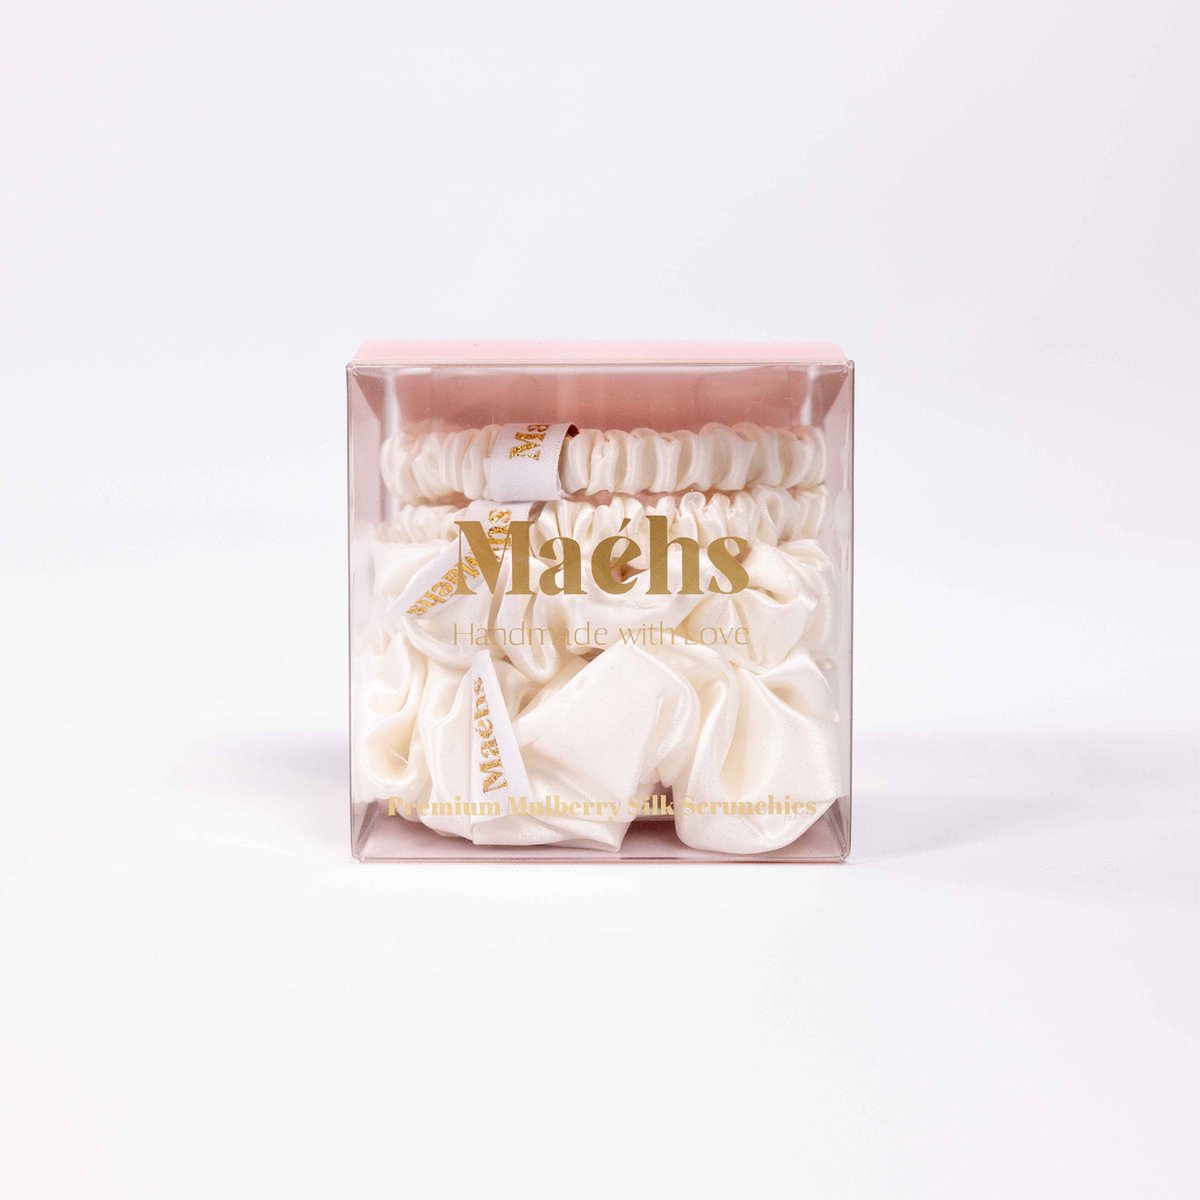 Maéhs Zurich Set van 4 mixed scrunchies 2x small medium, large haaraccessoires - haarelastiekjes - 100% moerbei zijde, kwaliteit 22 Momme - Kleur ivory ivoor - cadeautip